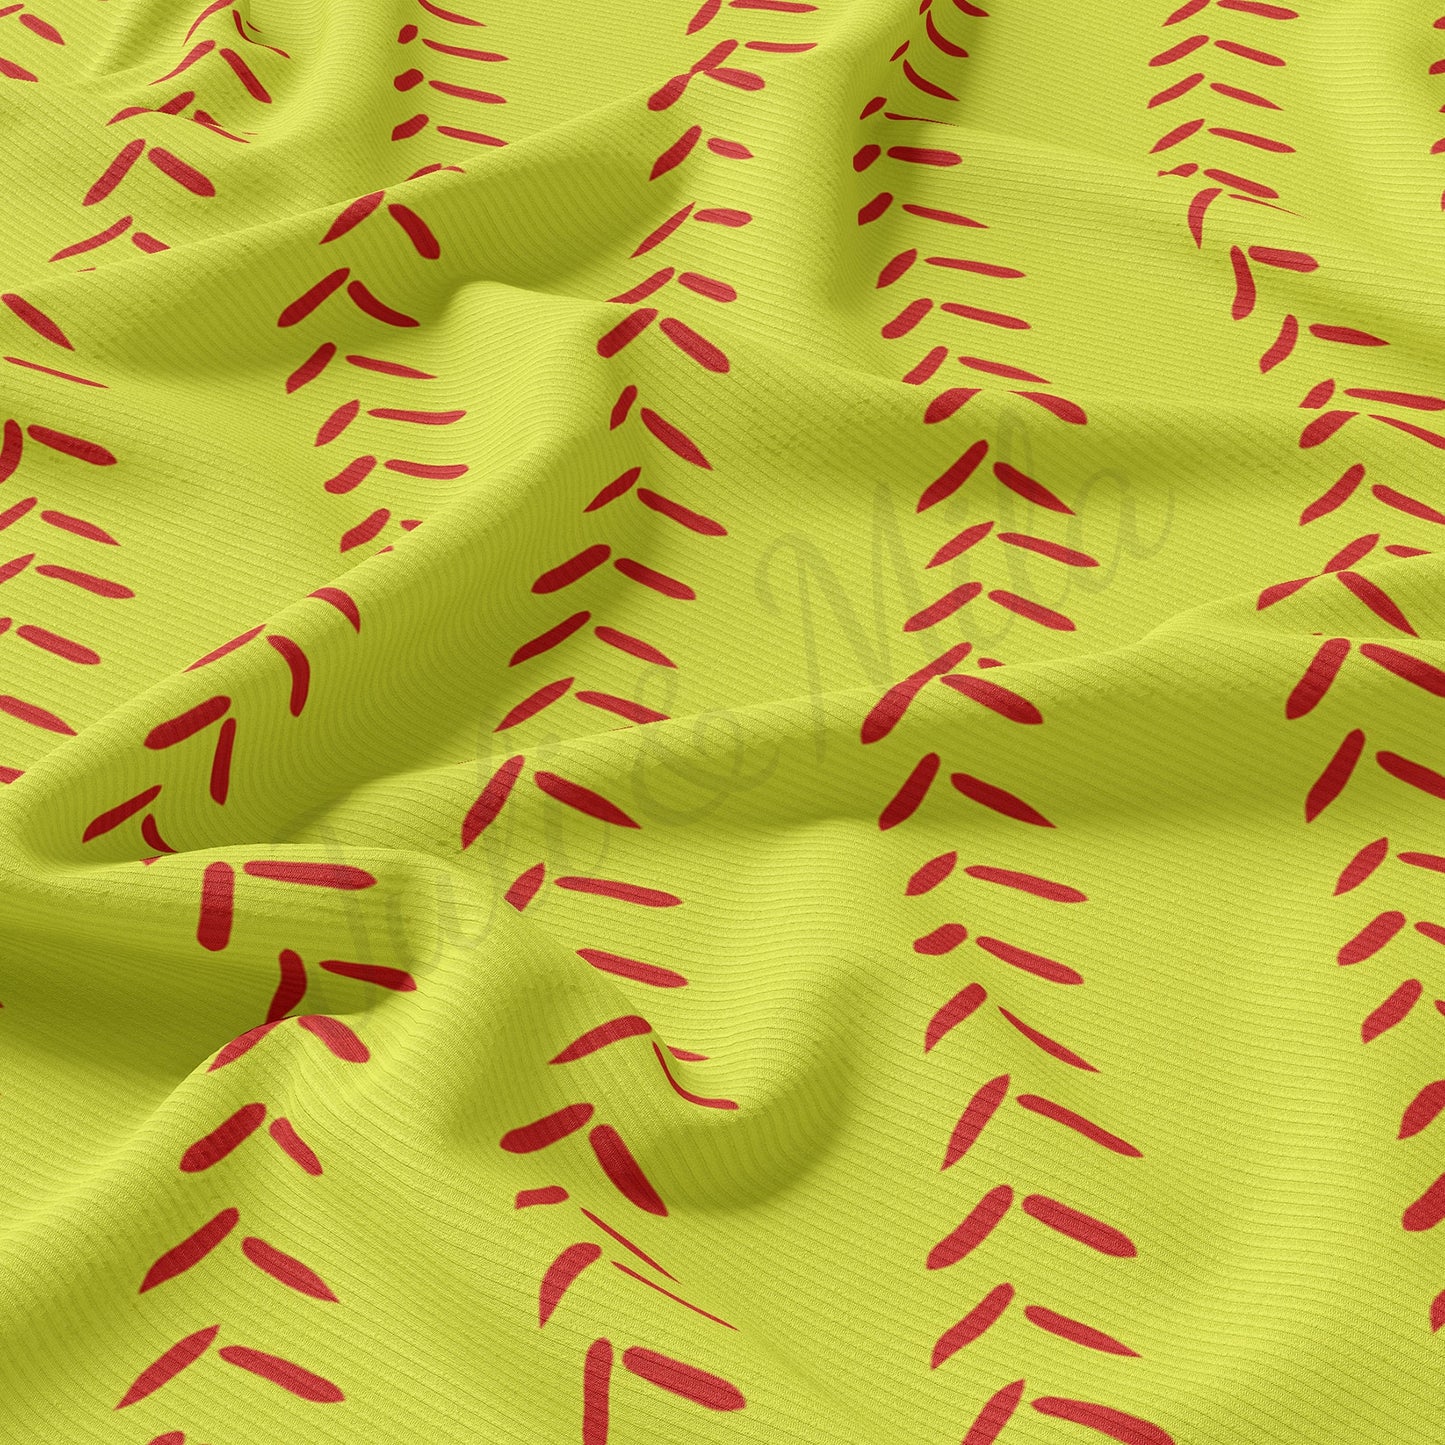 Softball Rib Knit Fabric RBK1624